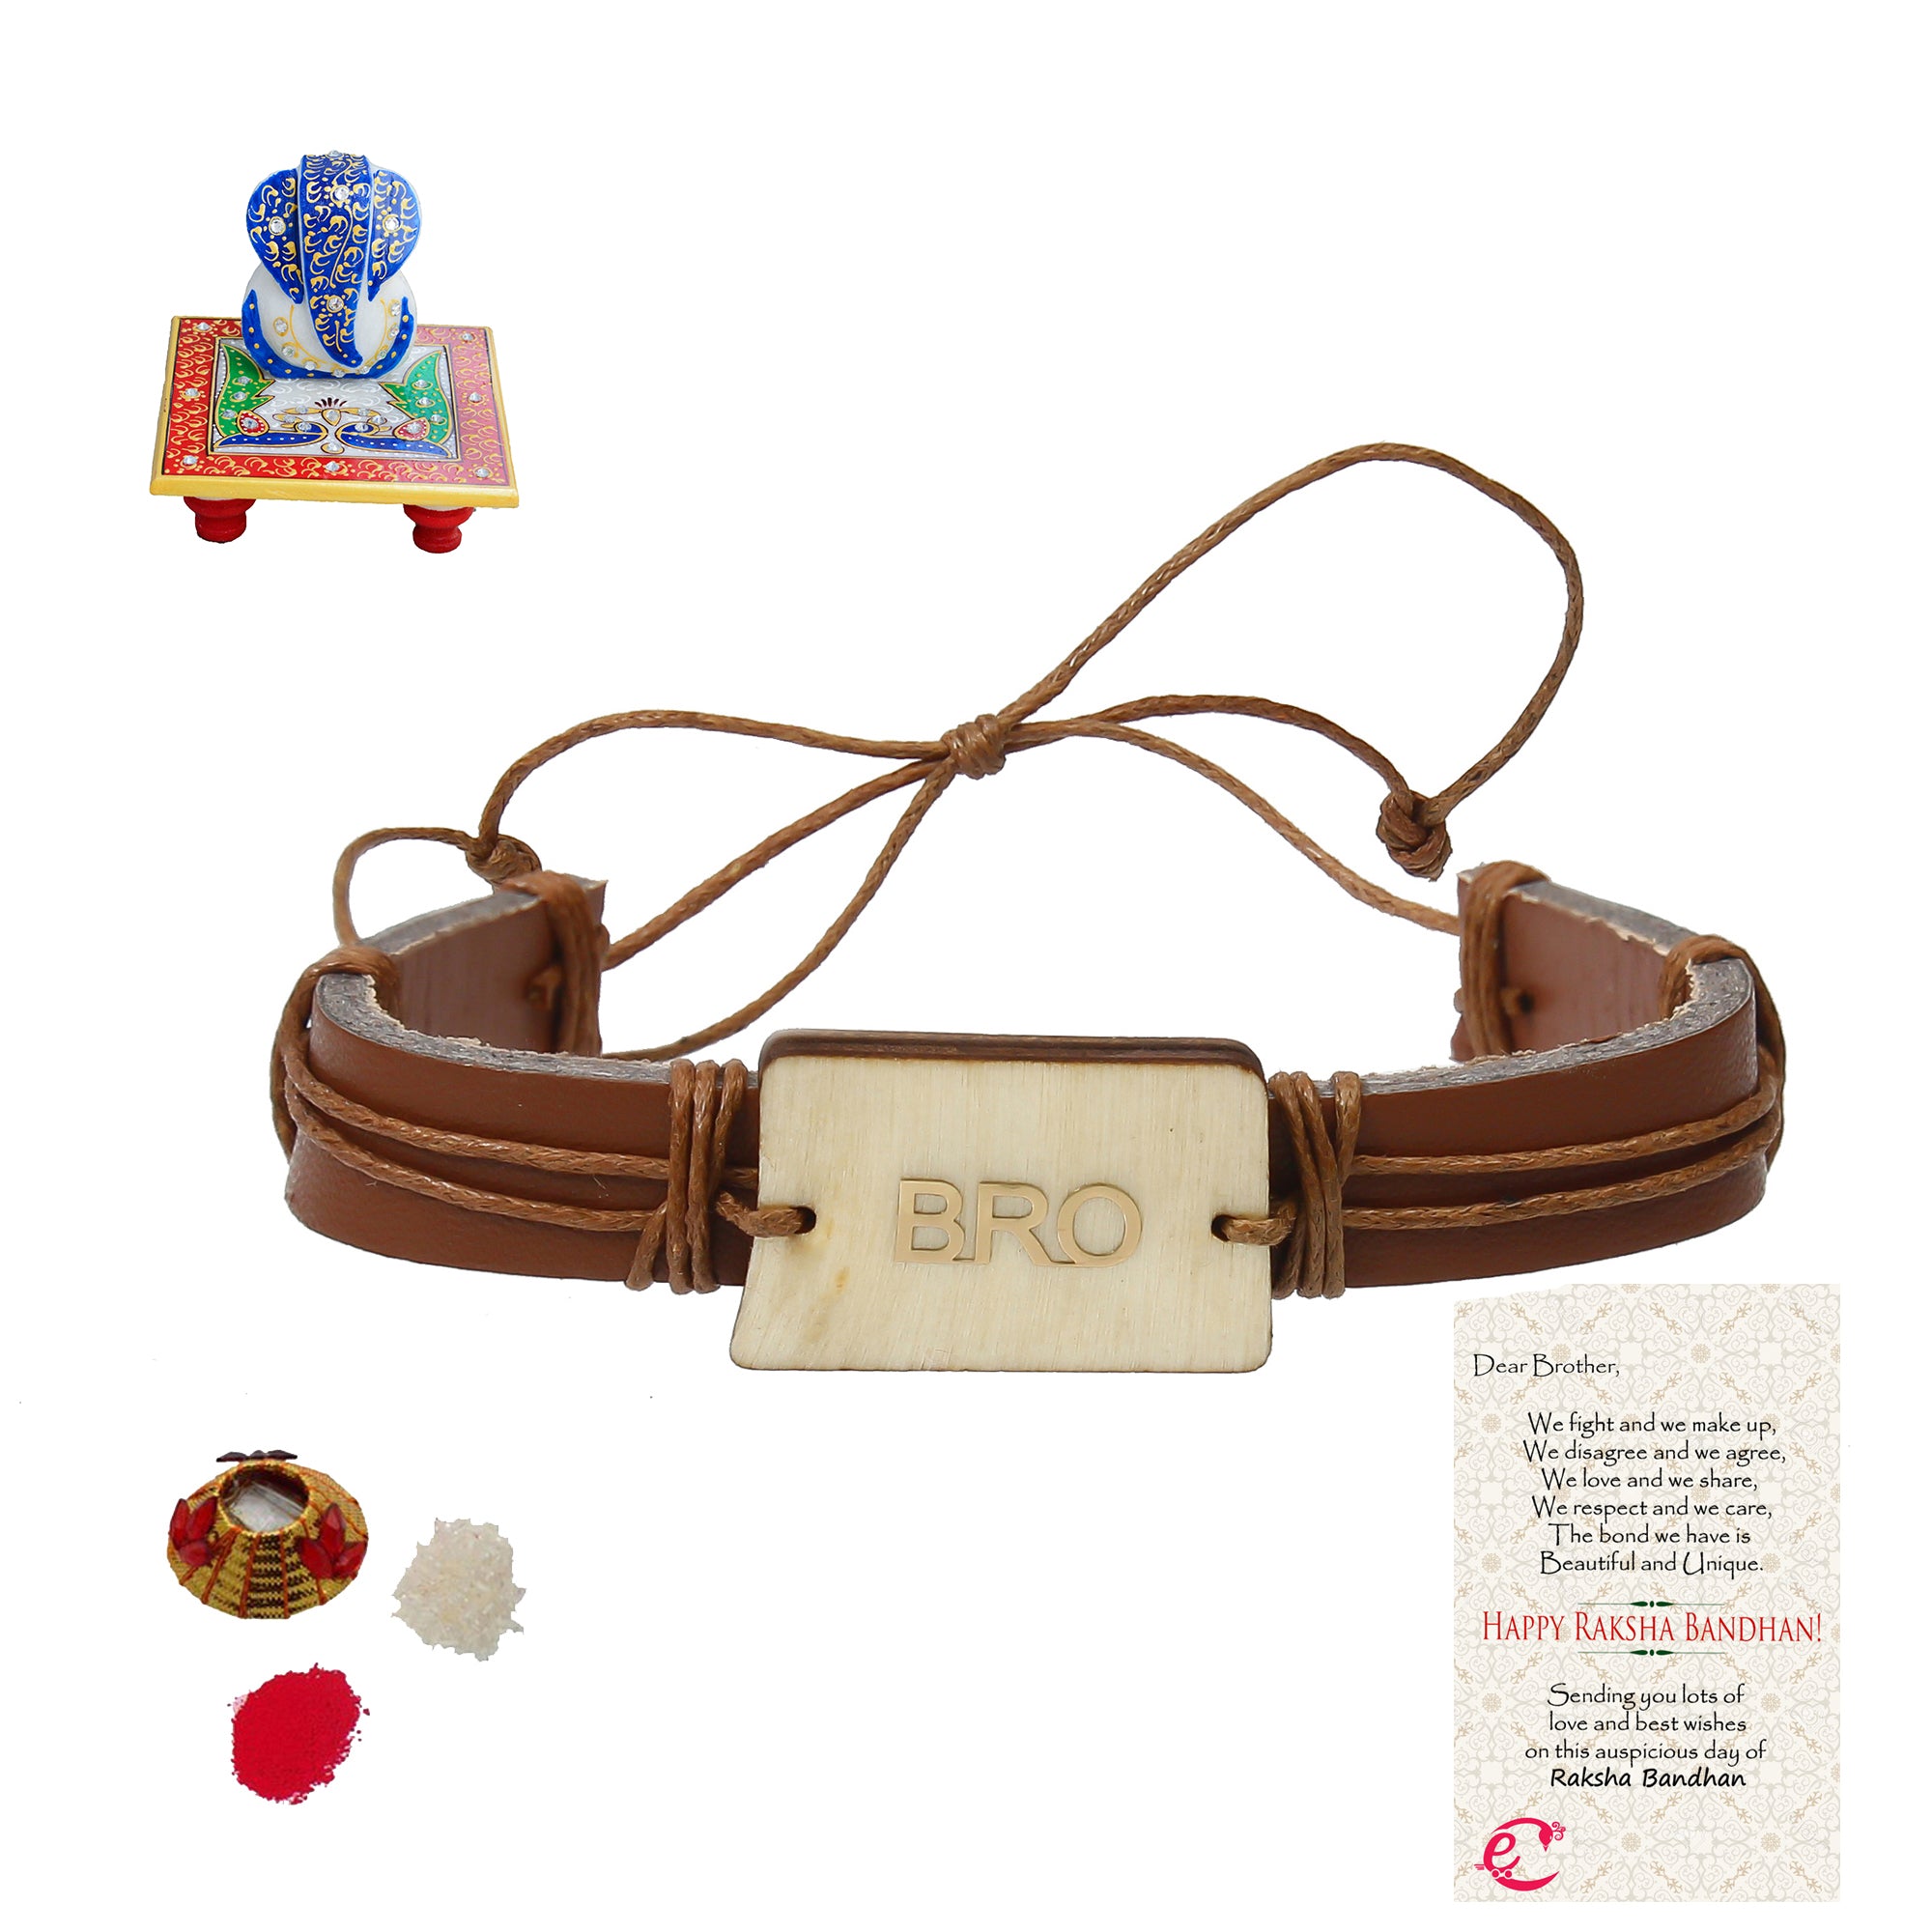 Designer Leather Bracelet BRO Rakhi with Lord Ganesha on Marble Chowki and Roli Tikka Matki, Best Wishes Greeting Card